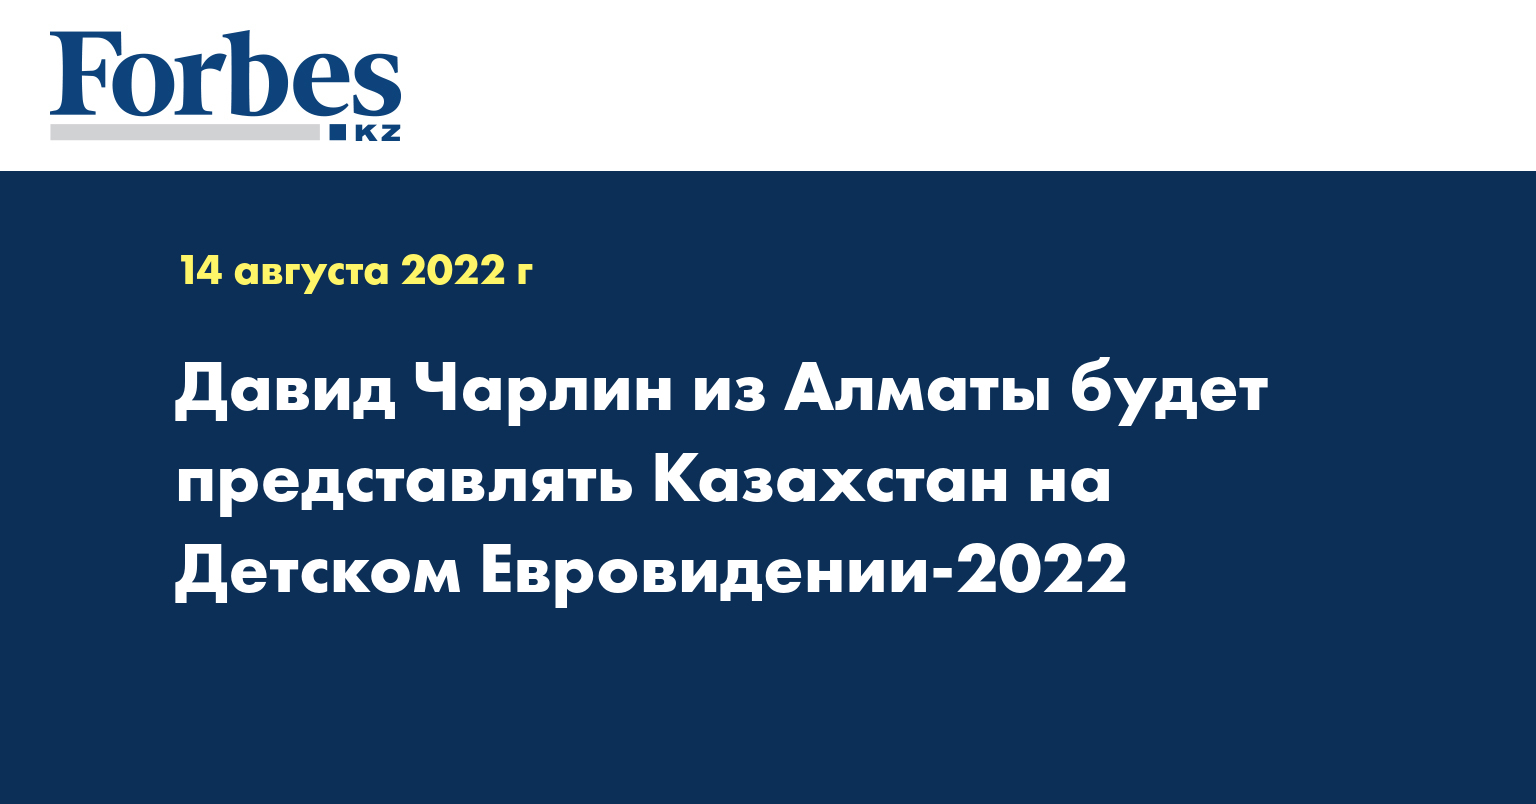 Давид Чарлин из Алматы будет представлять Казахстан на Детском Евровидении-2022